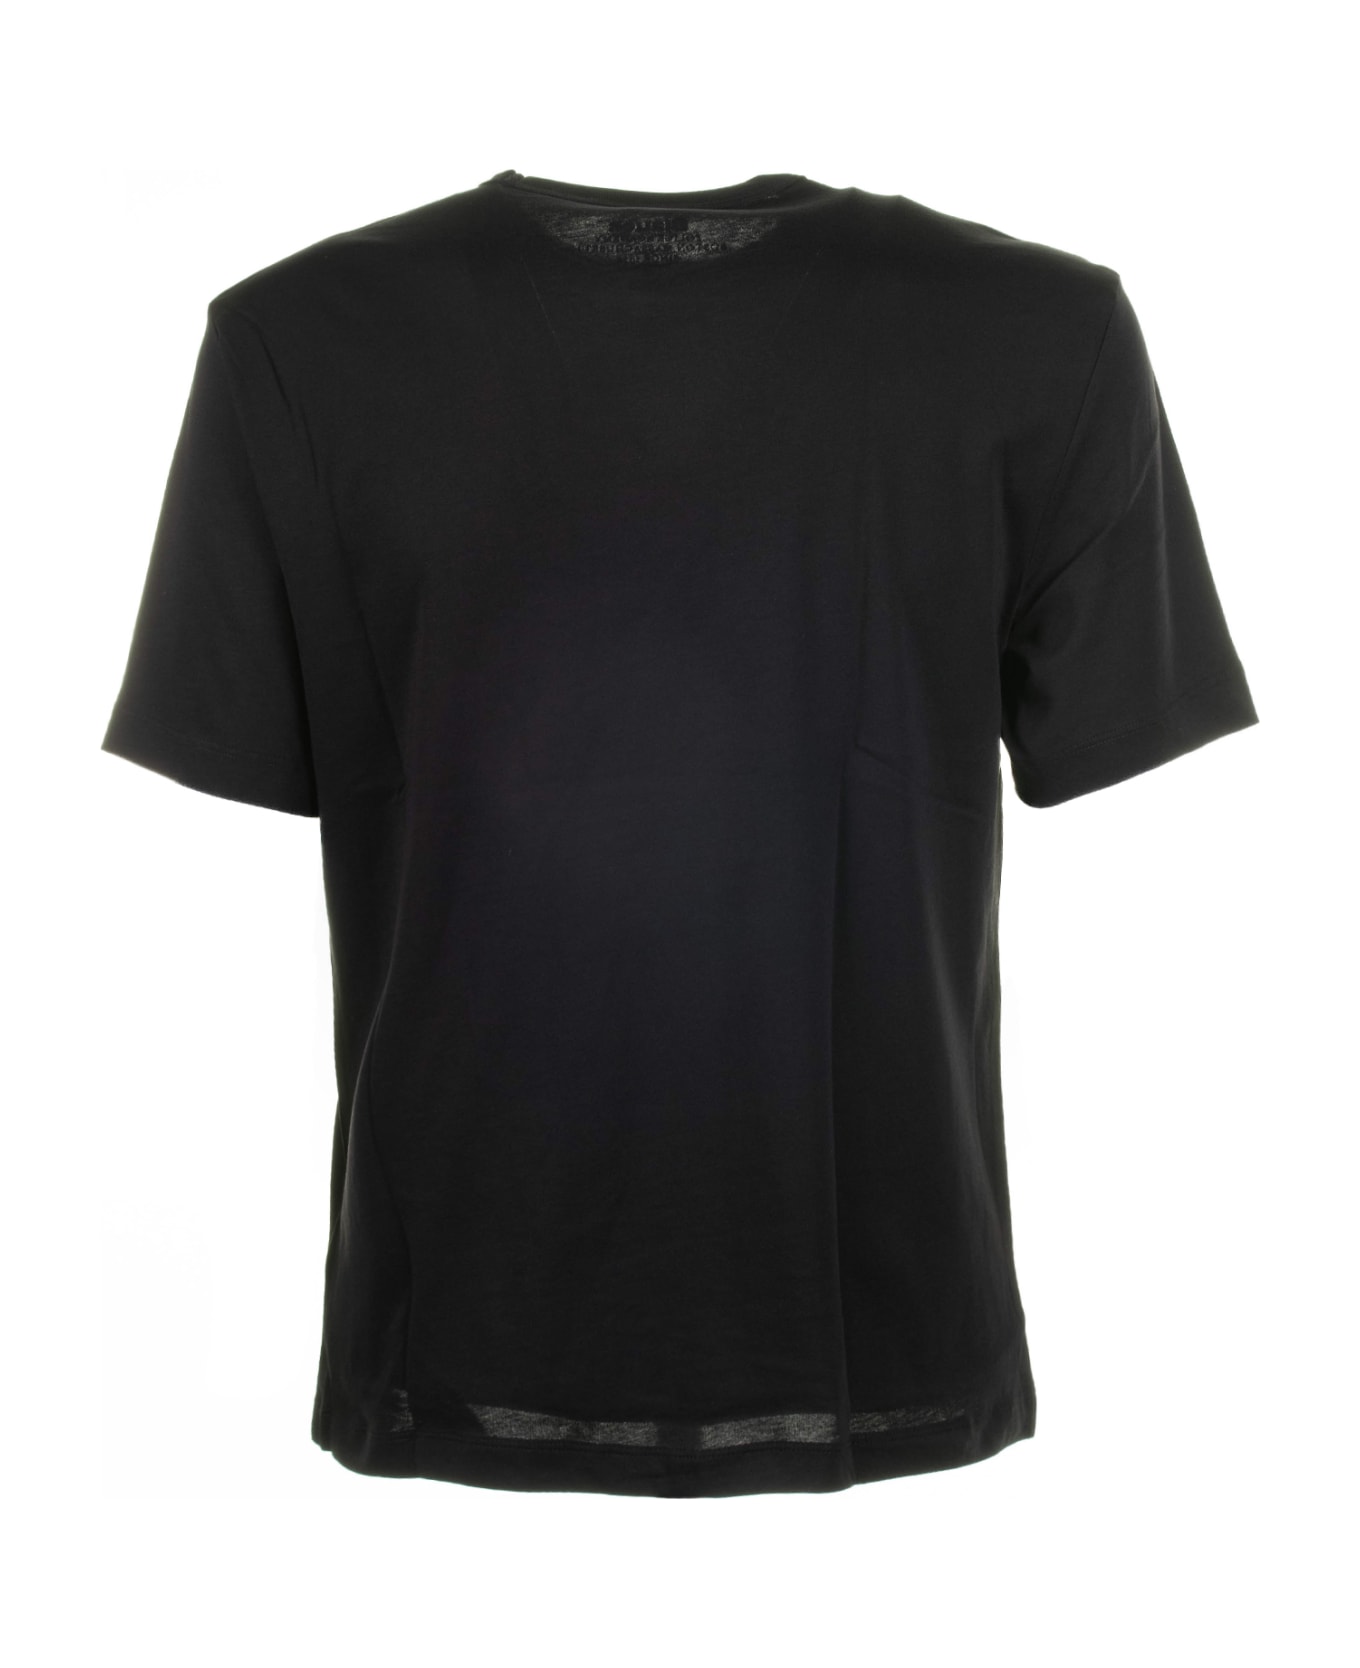 Blauer Black Crew Neck T-shirt In Cotton - NERO シャツ